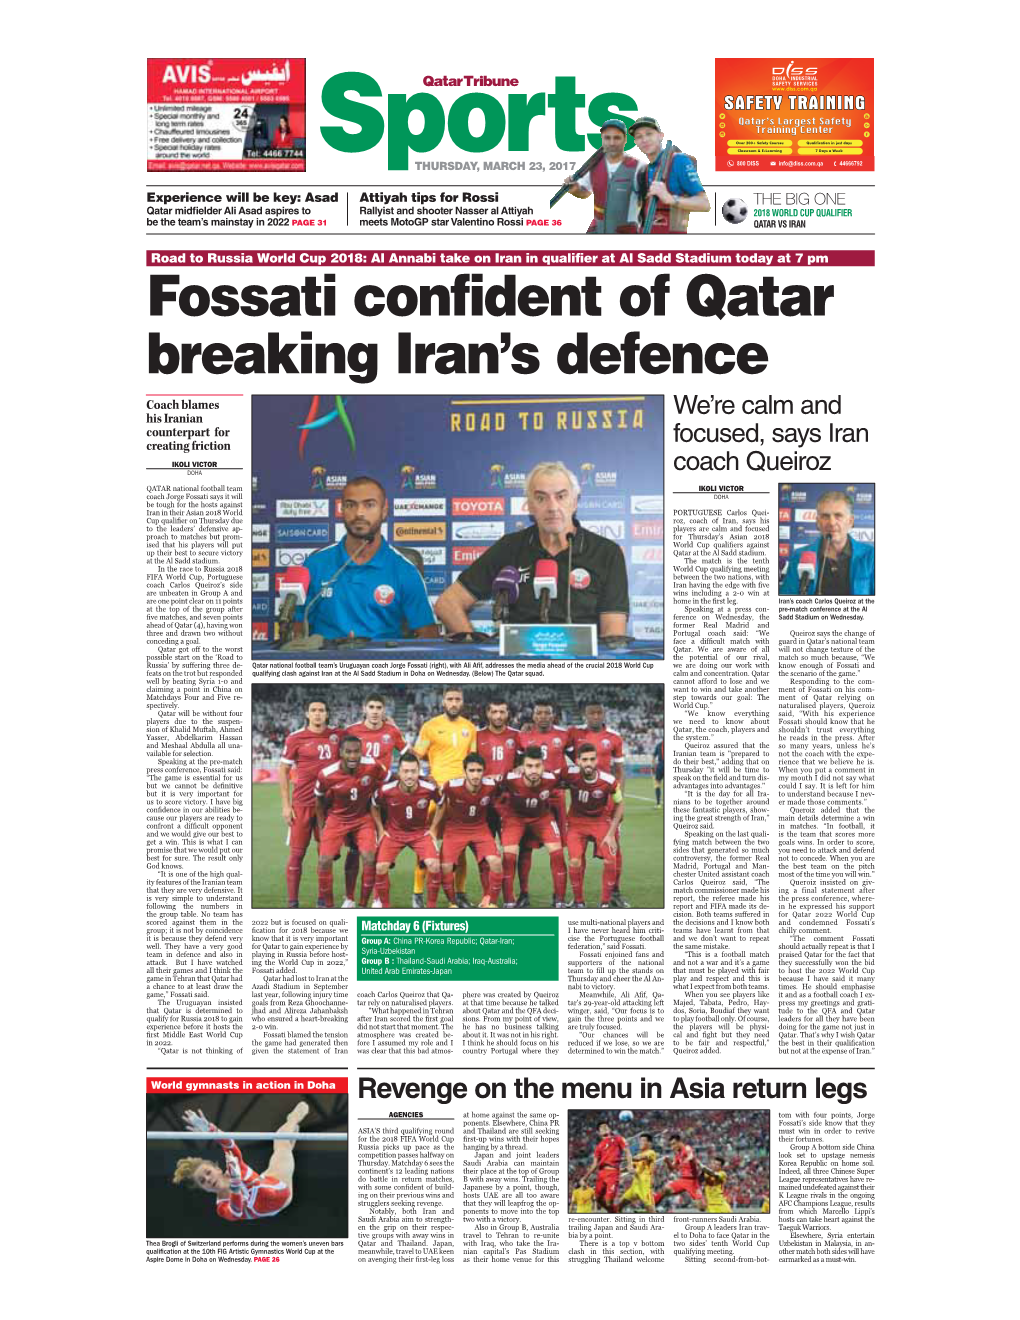 Fossati Confident of Qatar Breaking Iran's Defence